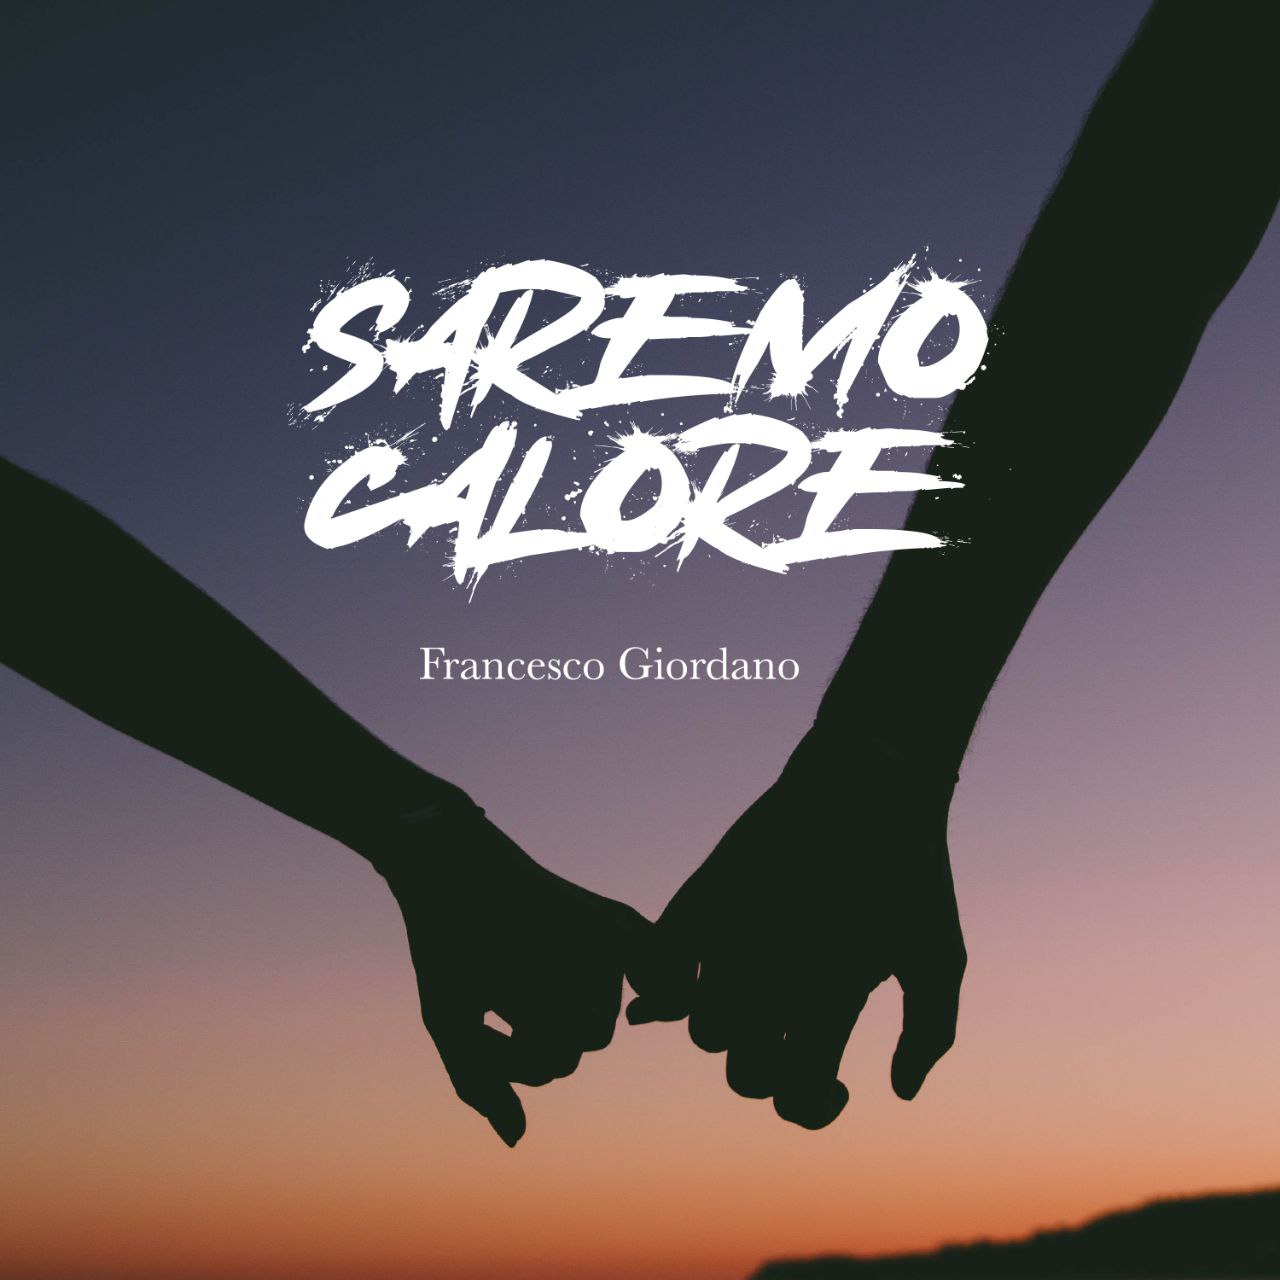 Saremo Calore è il nuovo singolo di Francesco Giordano, disponibile da oggi